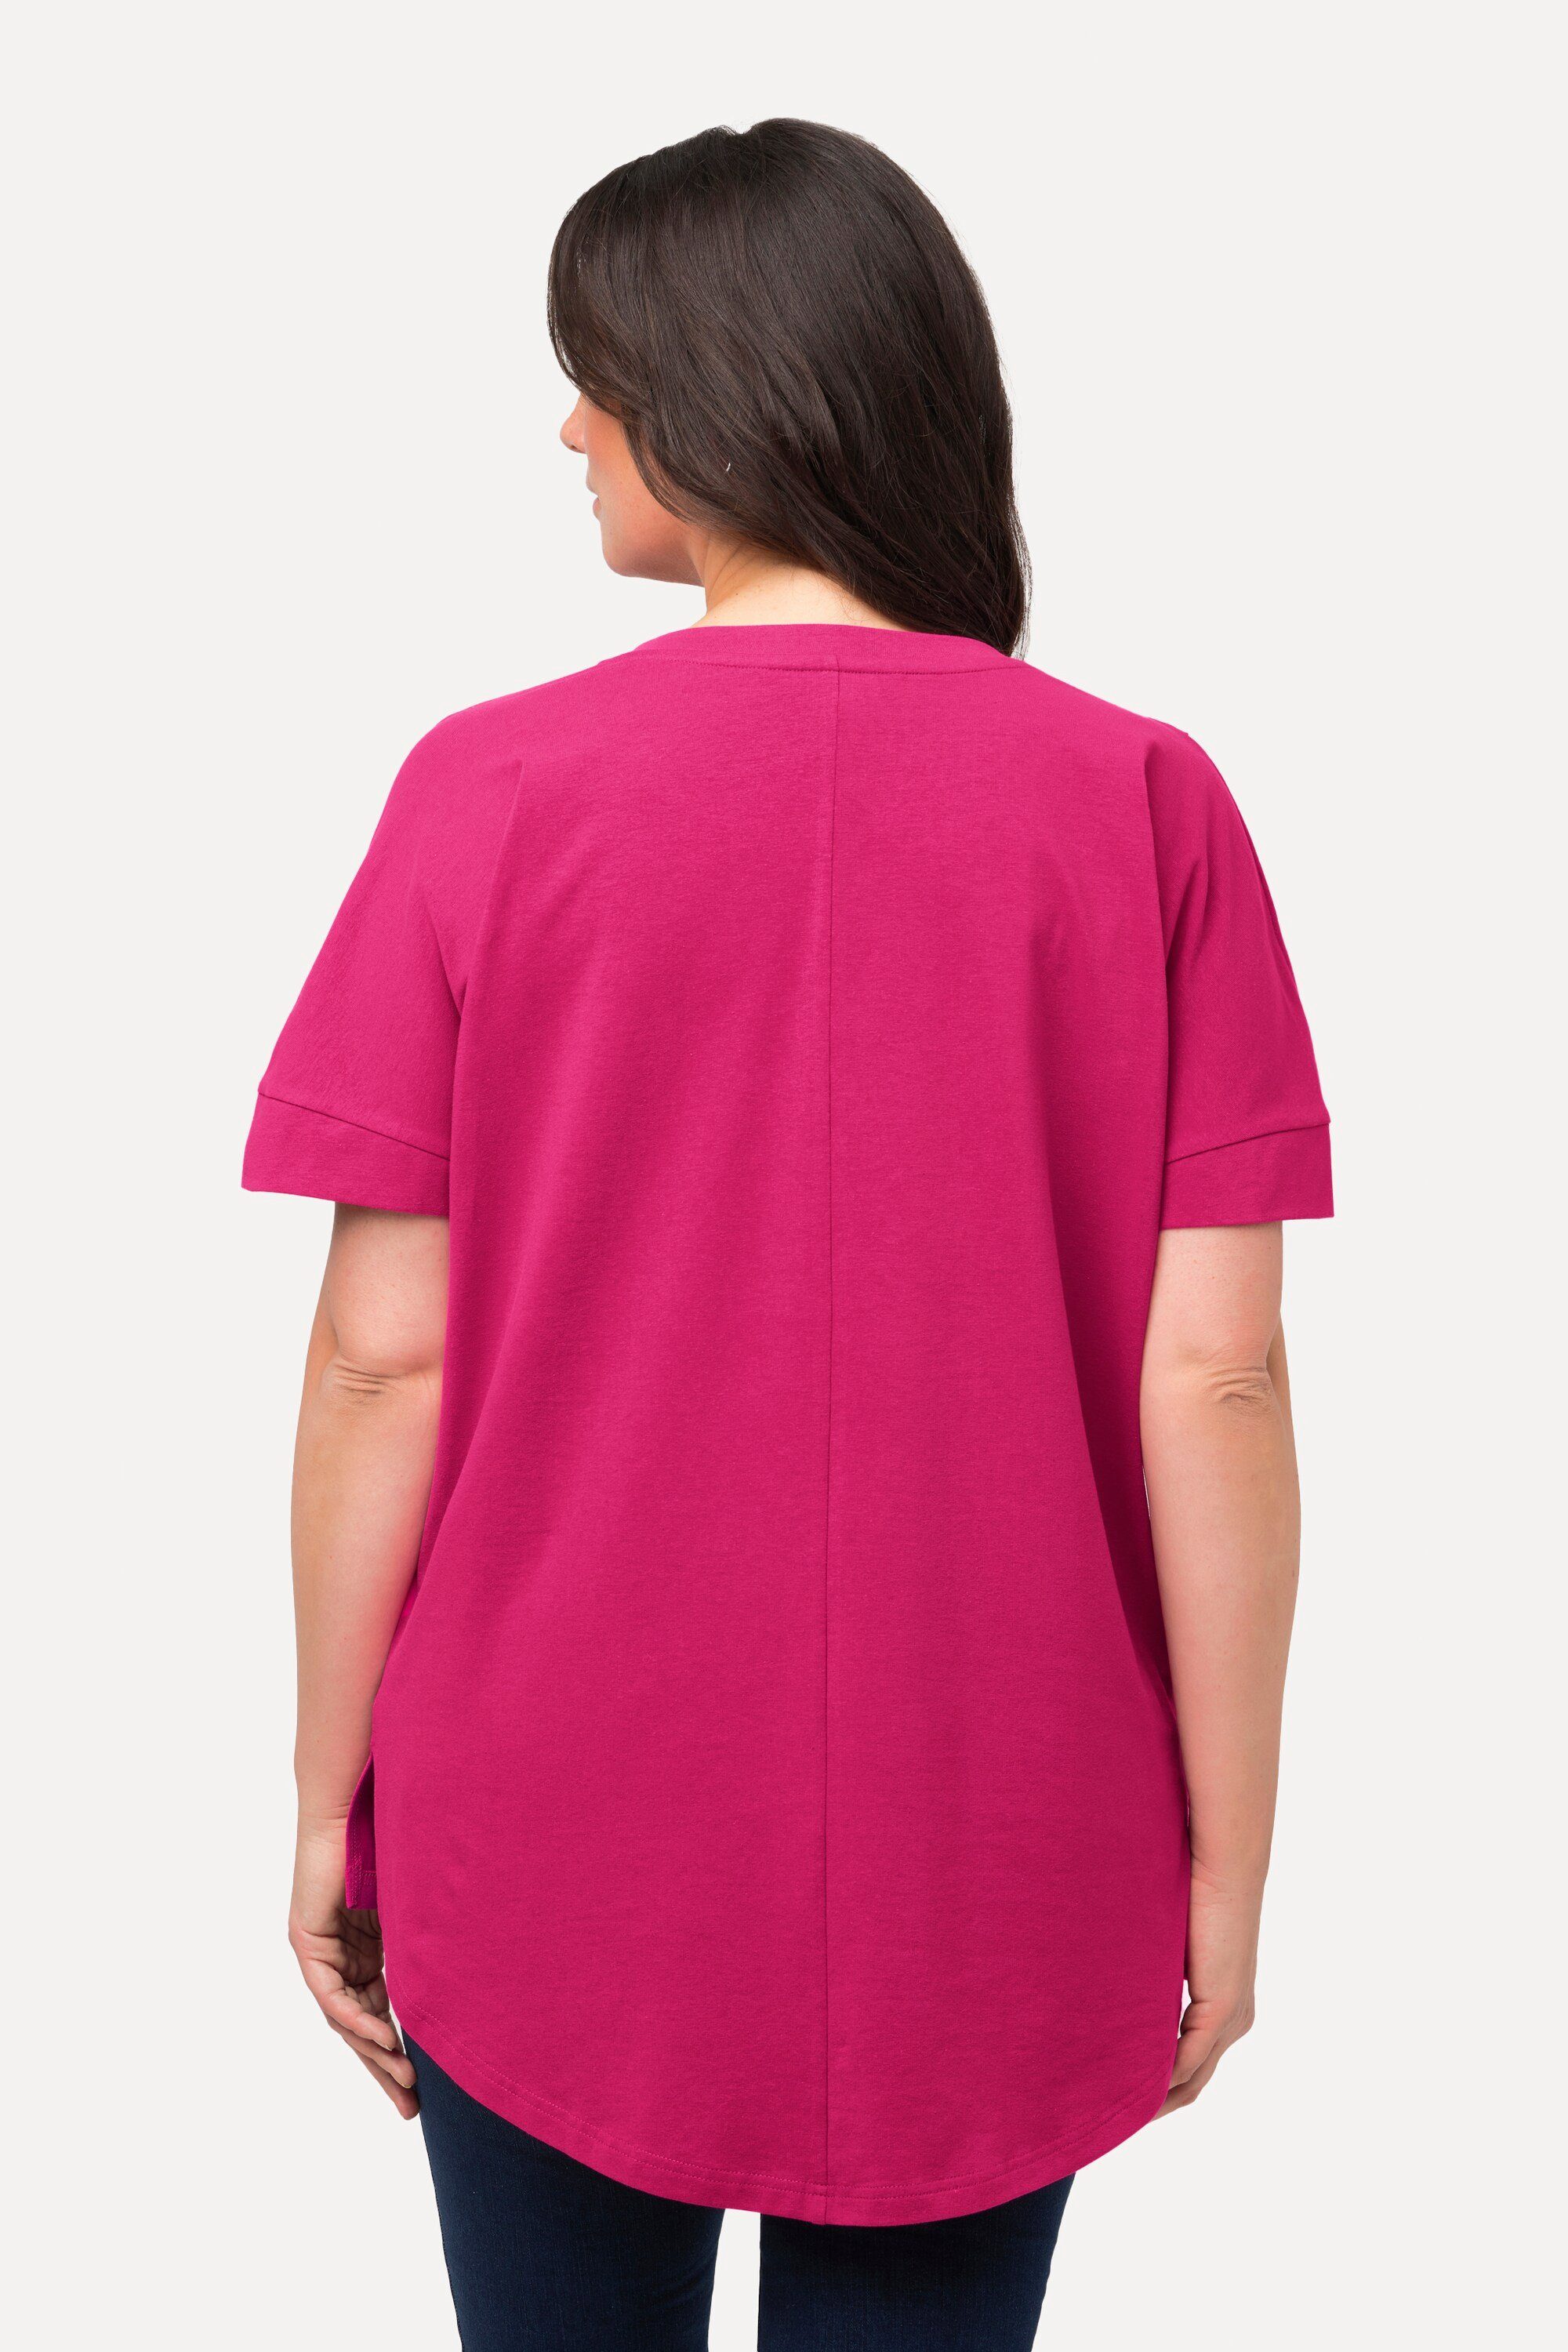 Oversized Zierfalten fuchsia Rundhalsshirt pink Longshirt V-Ausschnitt Ulla Popken